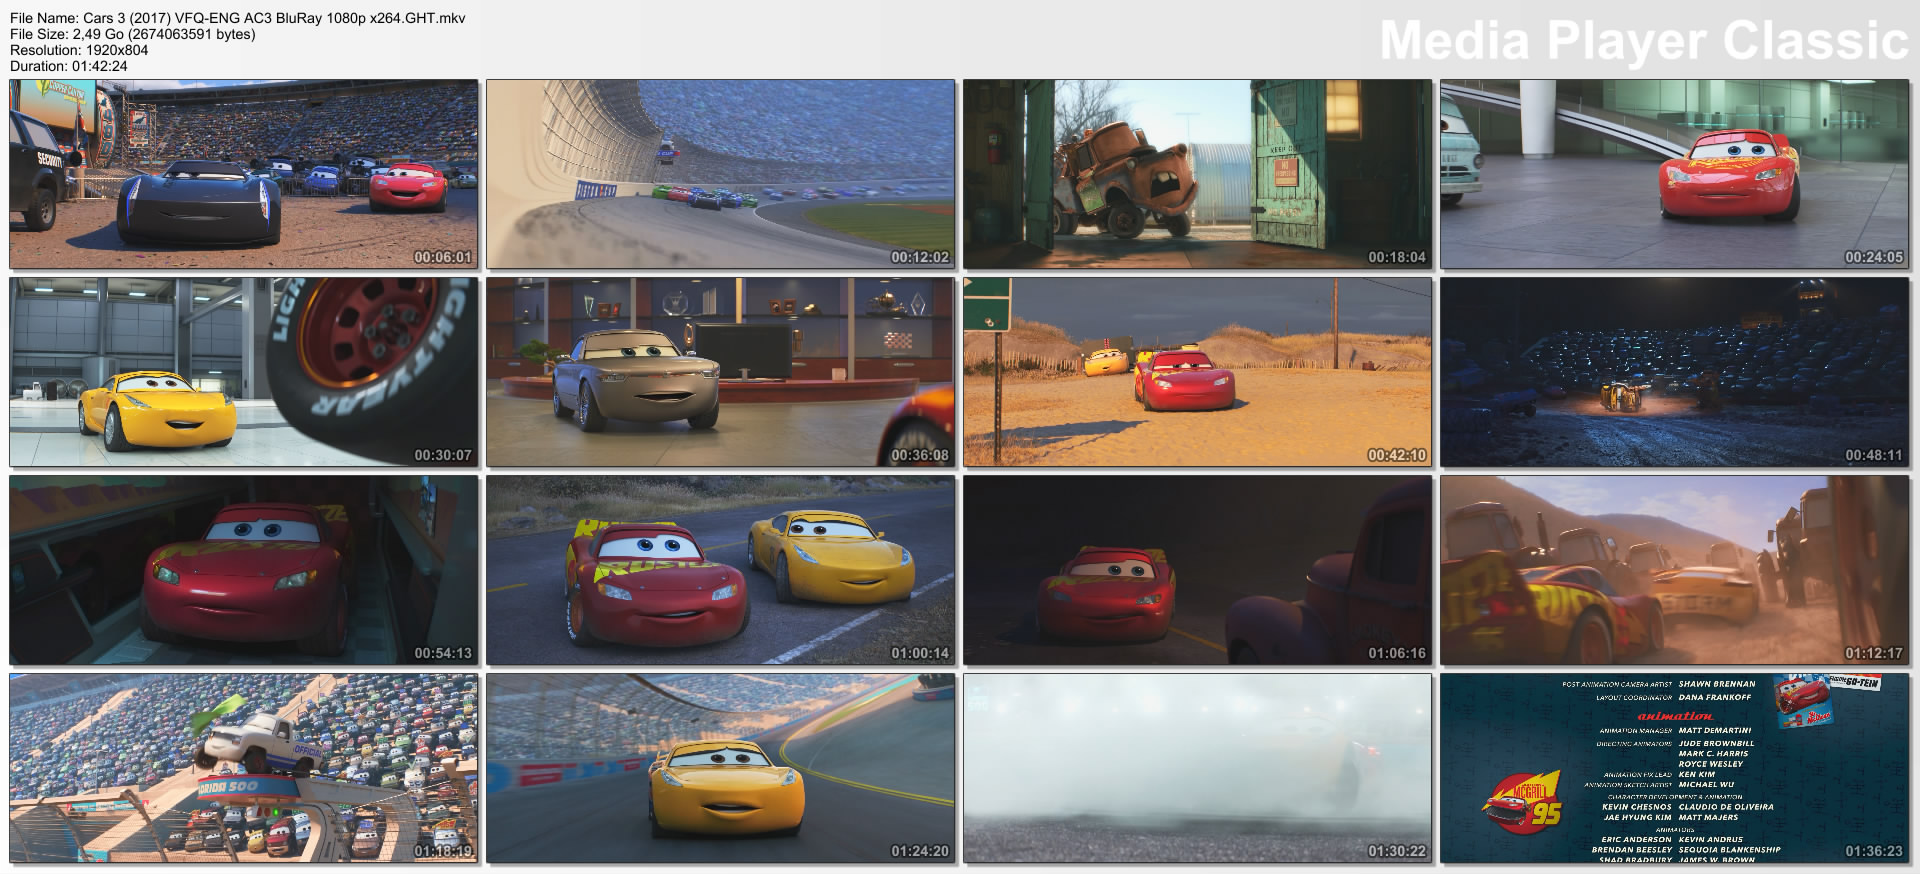 Cars 3 (2017) VFQ-ENG AC3 BluRay 1080p x264.GHT